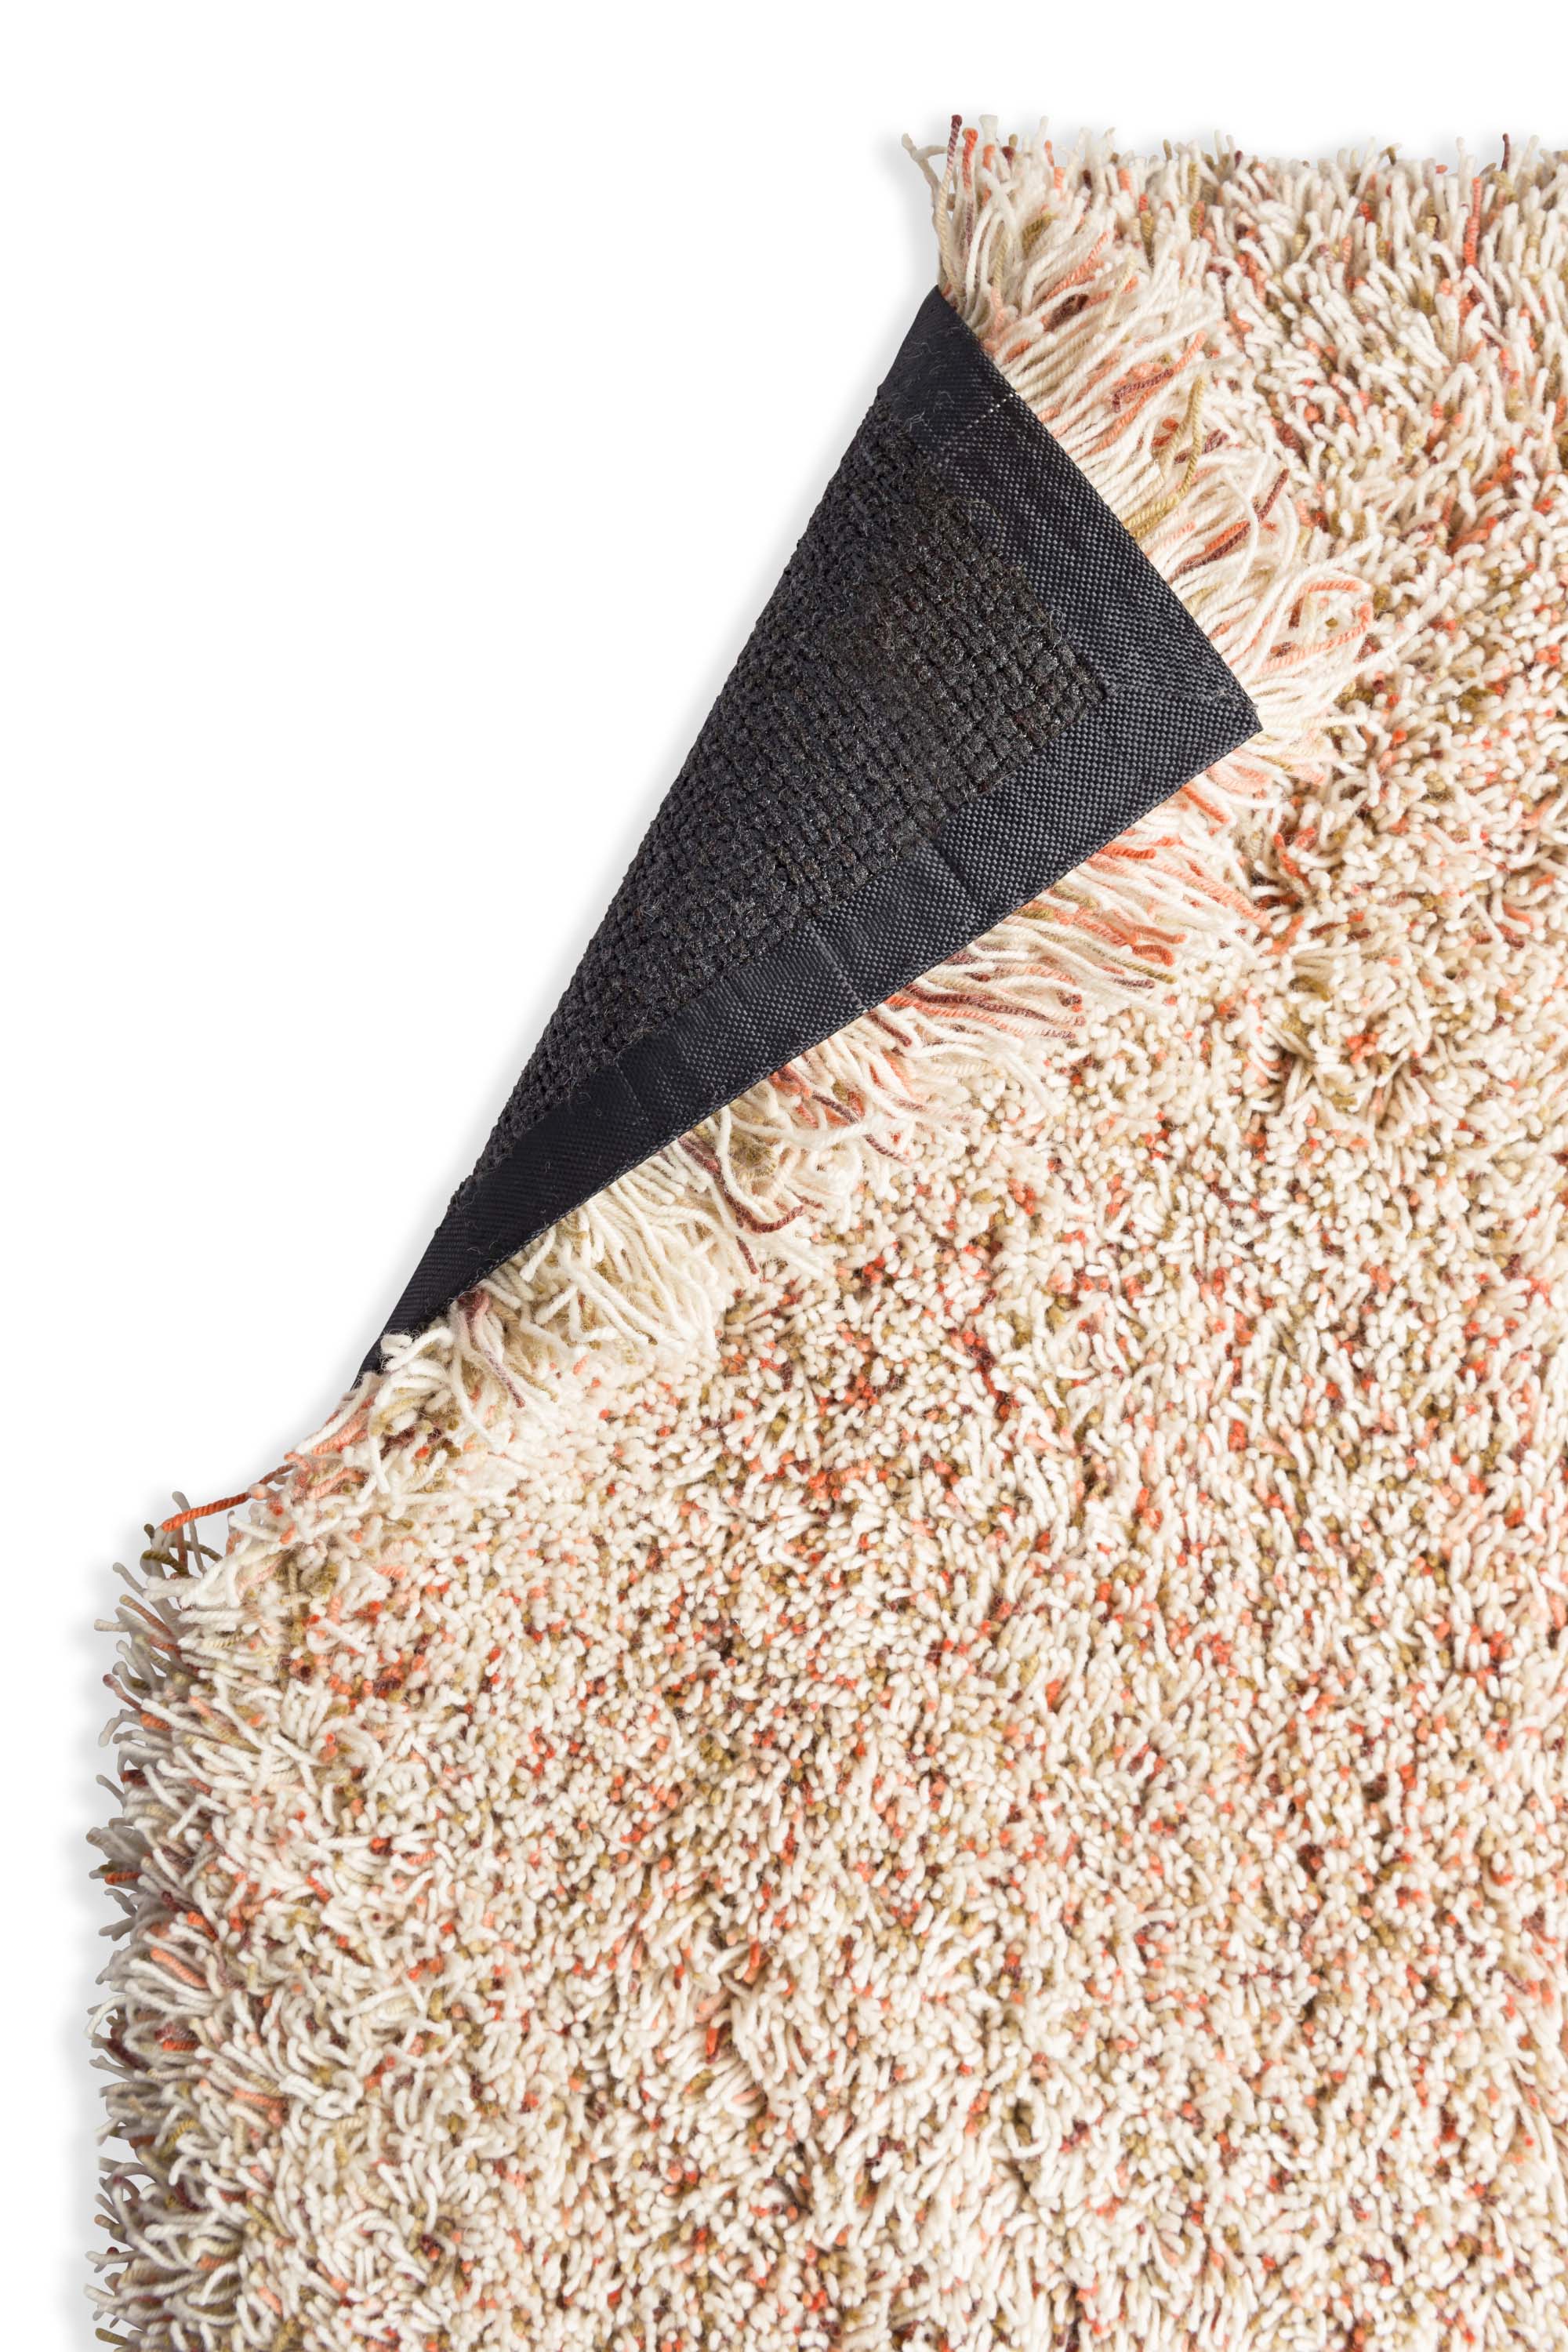 Plain shaggy rug with cream and multicolour pile